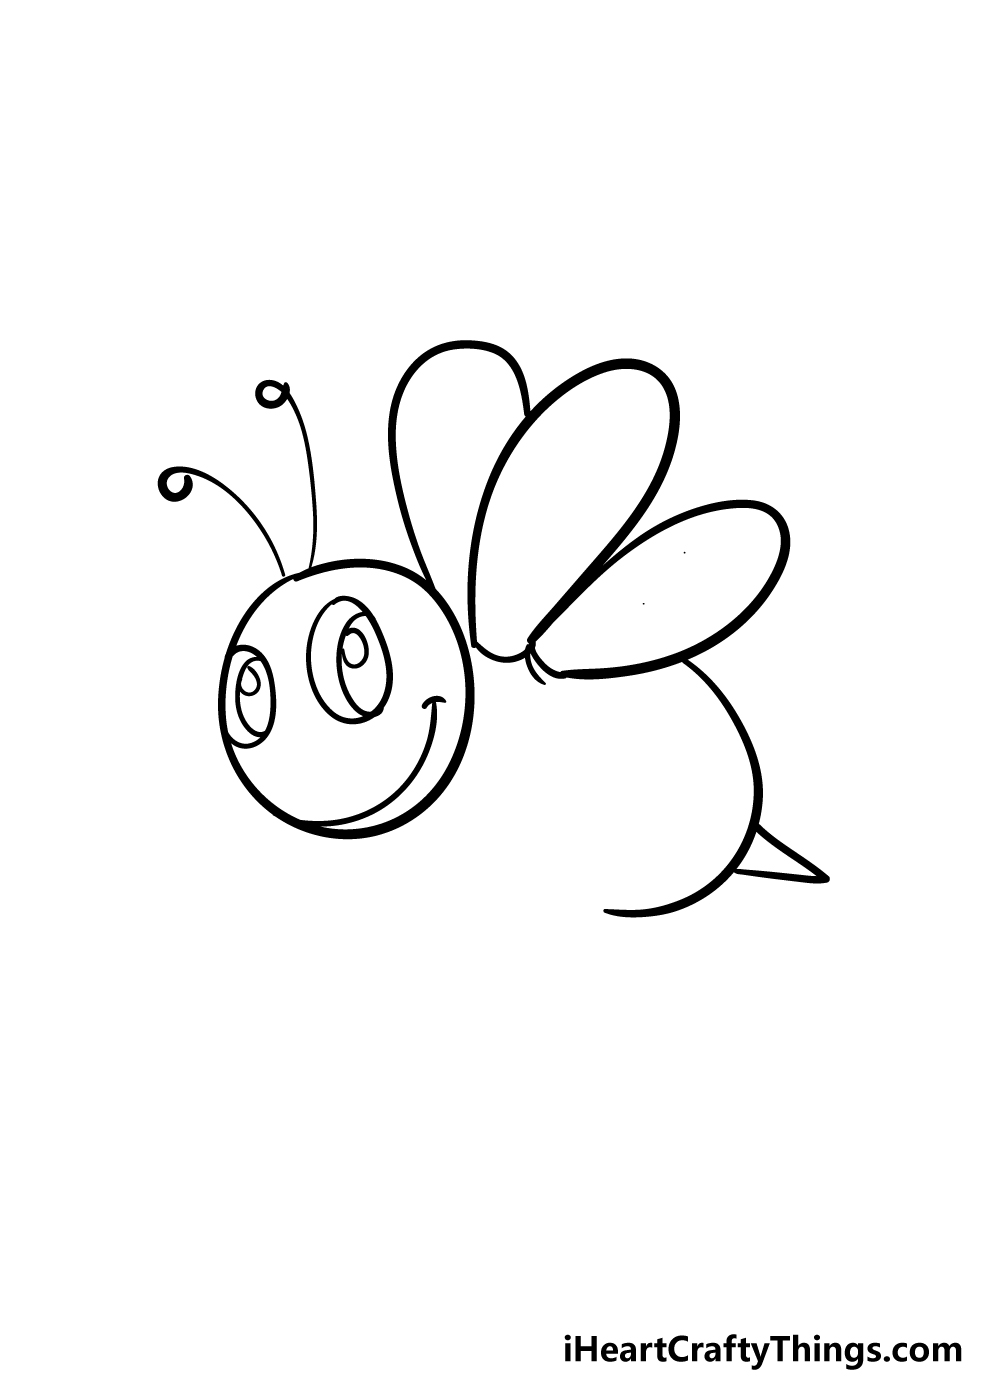 Bee4 - Hướng dẫn chi tiết cách vẽ con ong đơn giản với 7 bước cơ bản